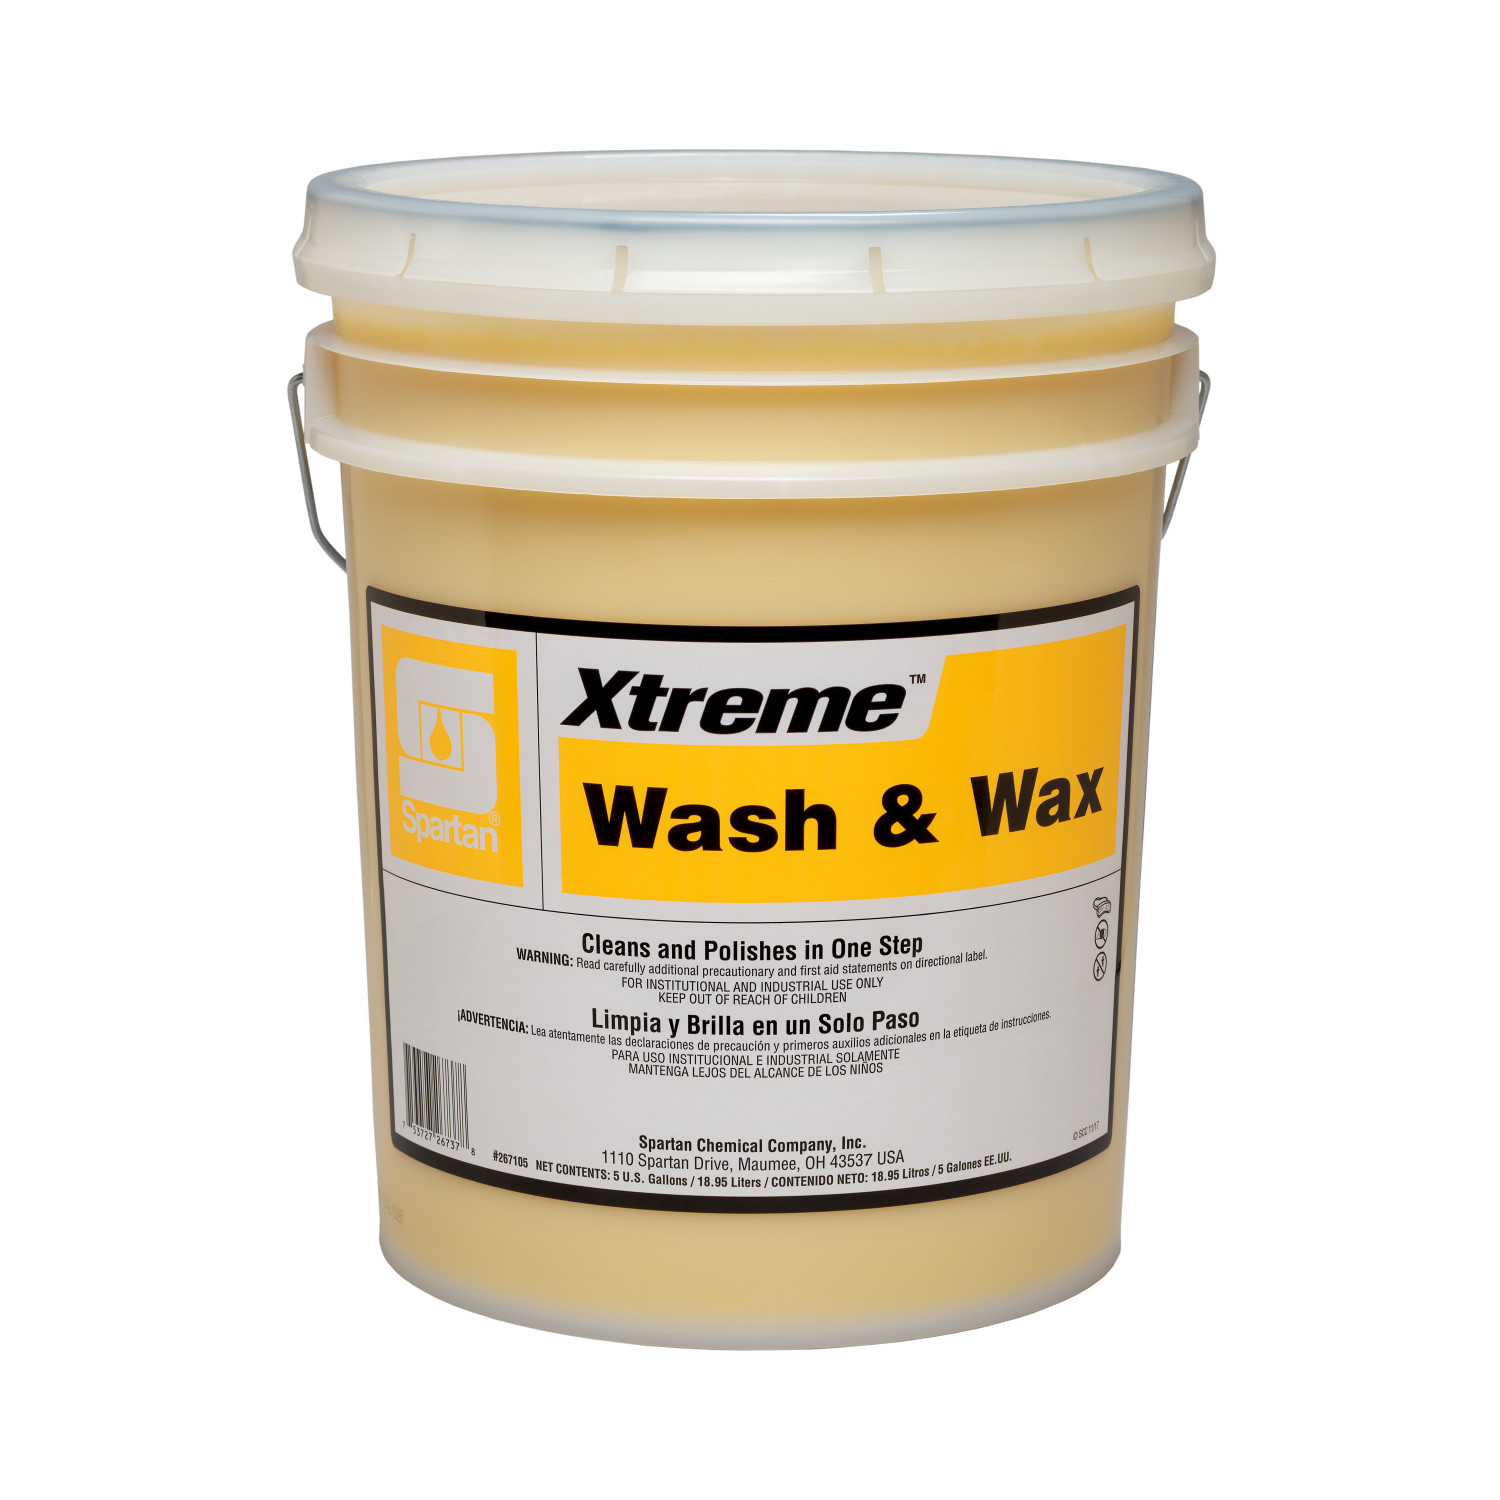 Xtreme® Wash & Wax 5 gallon pail